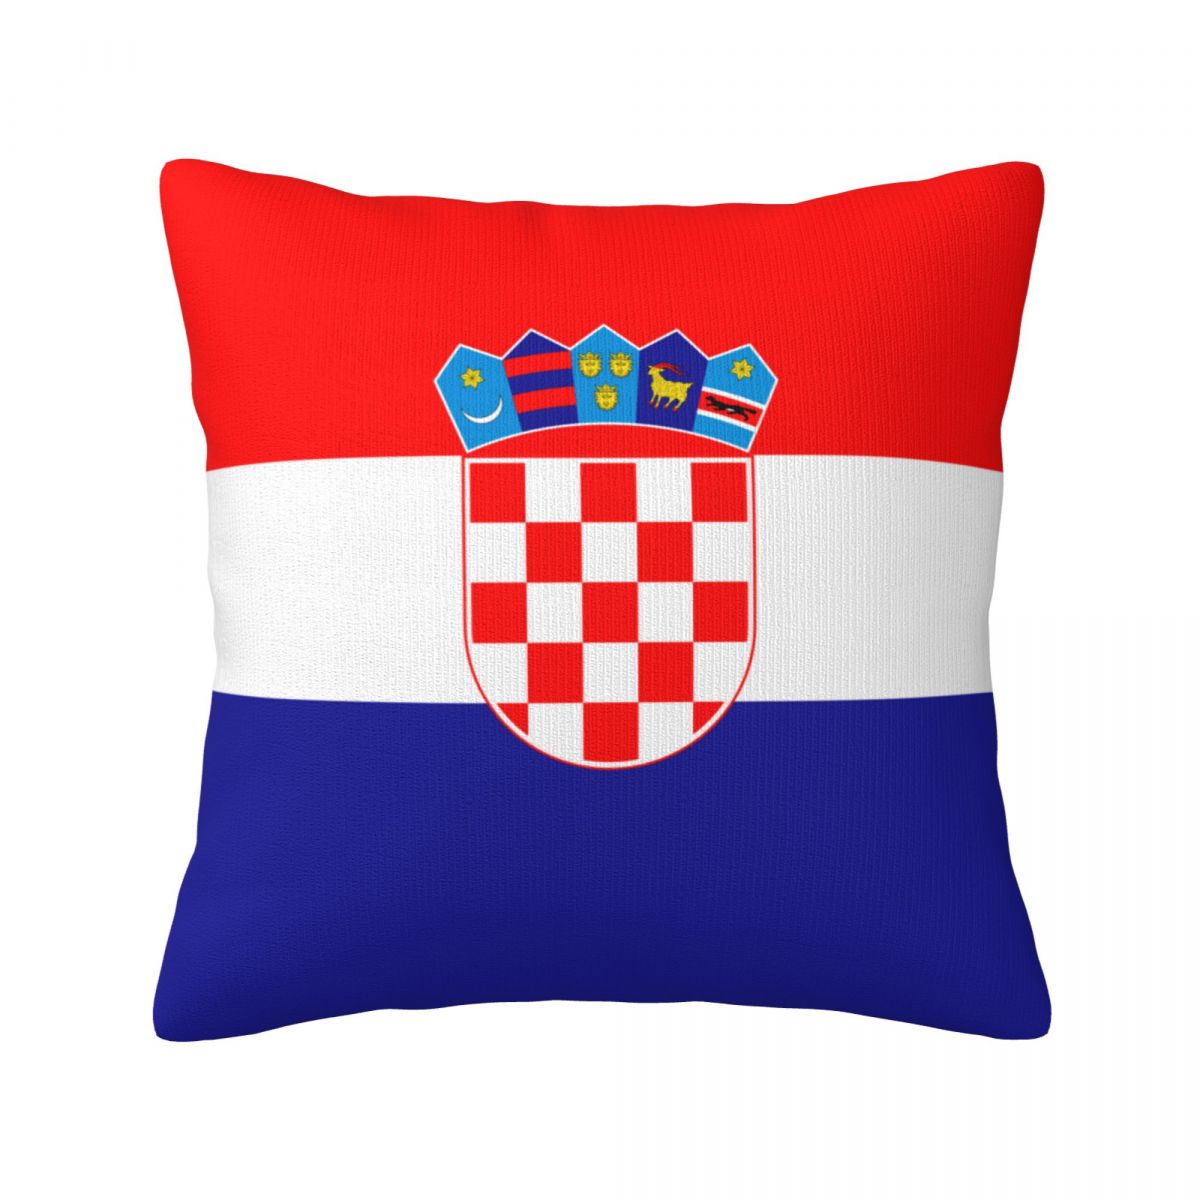 Croatia Throw Pillows 18 x 18 inch